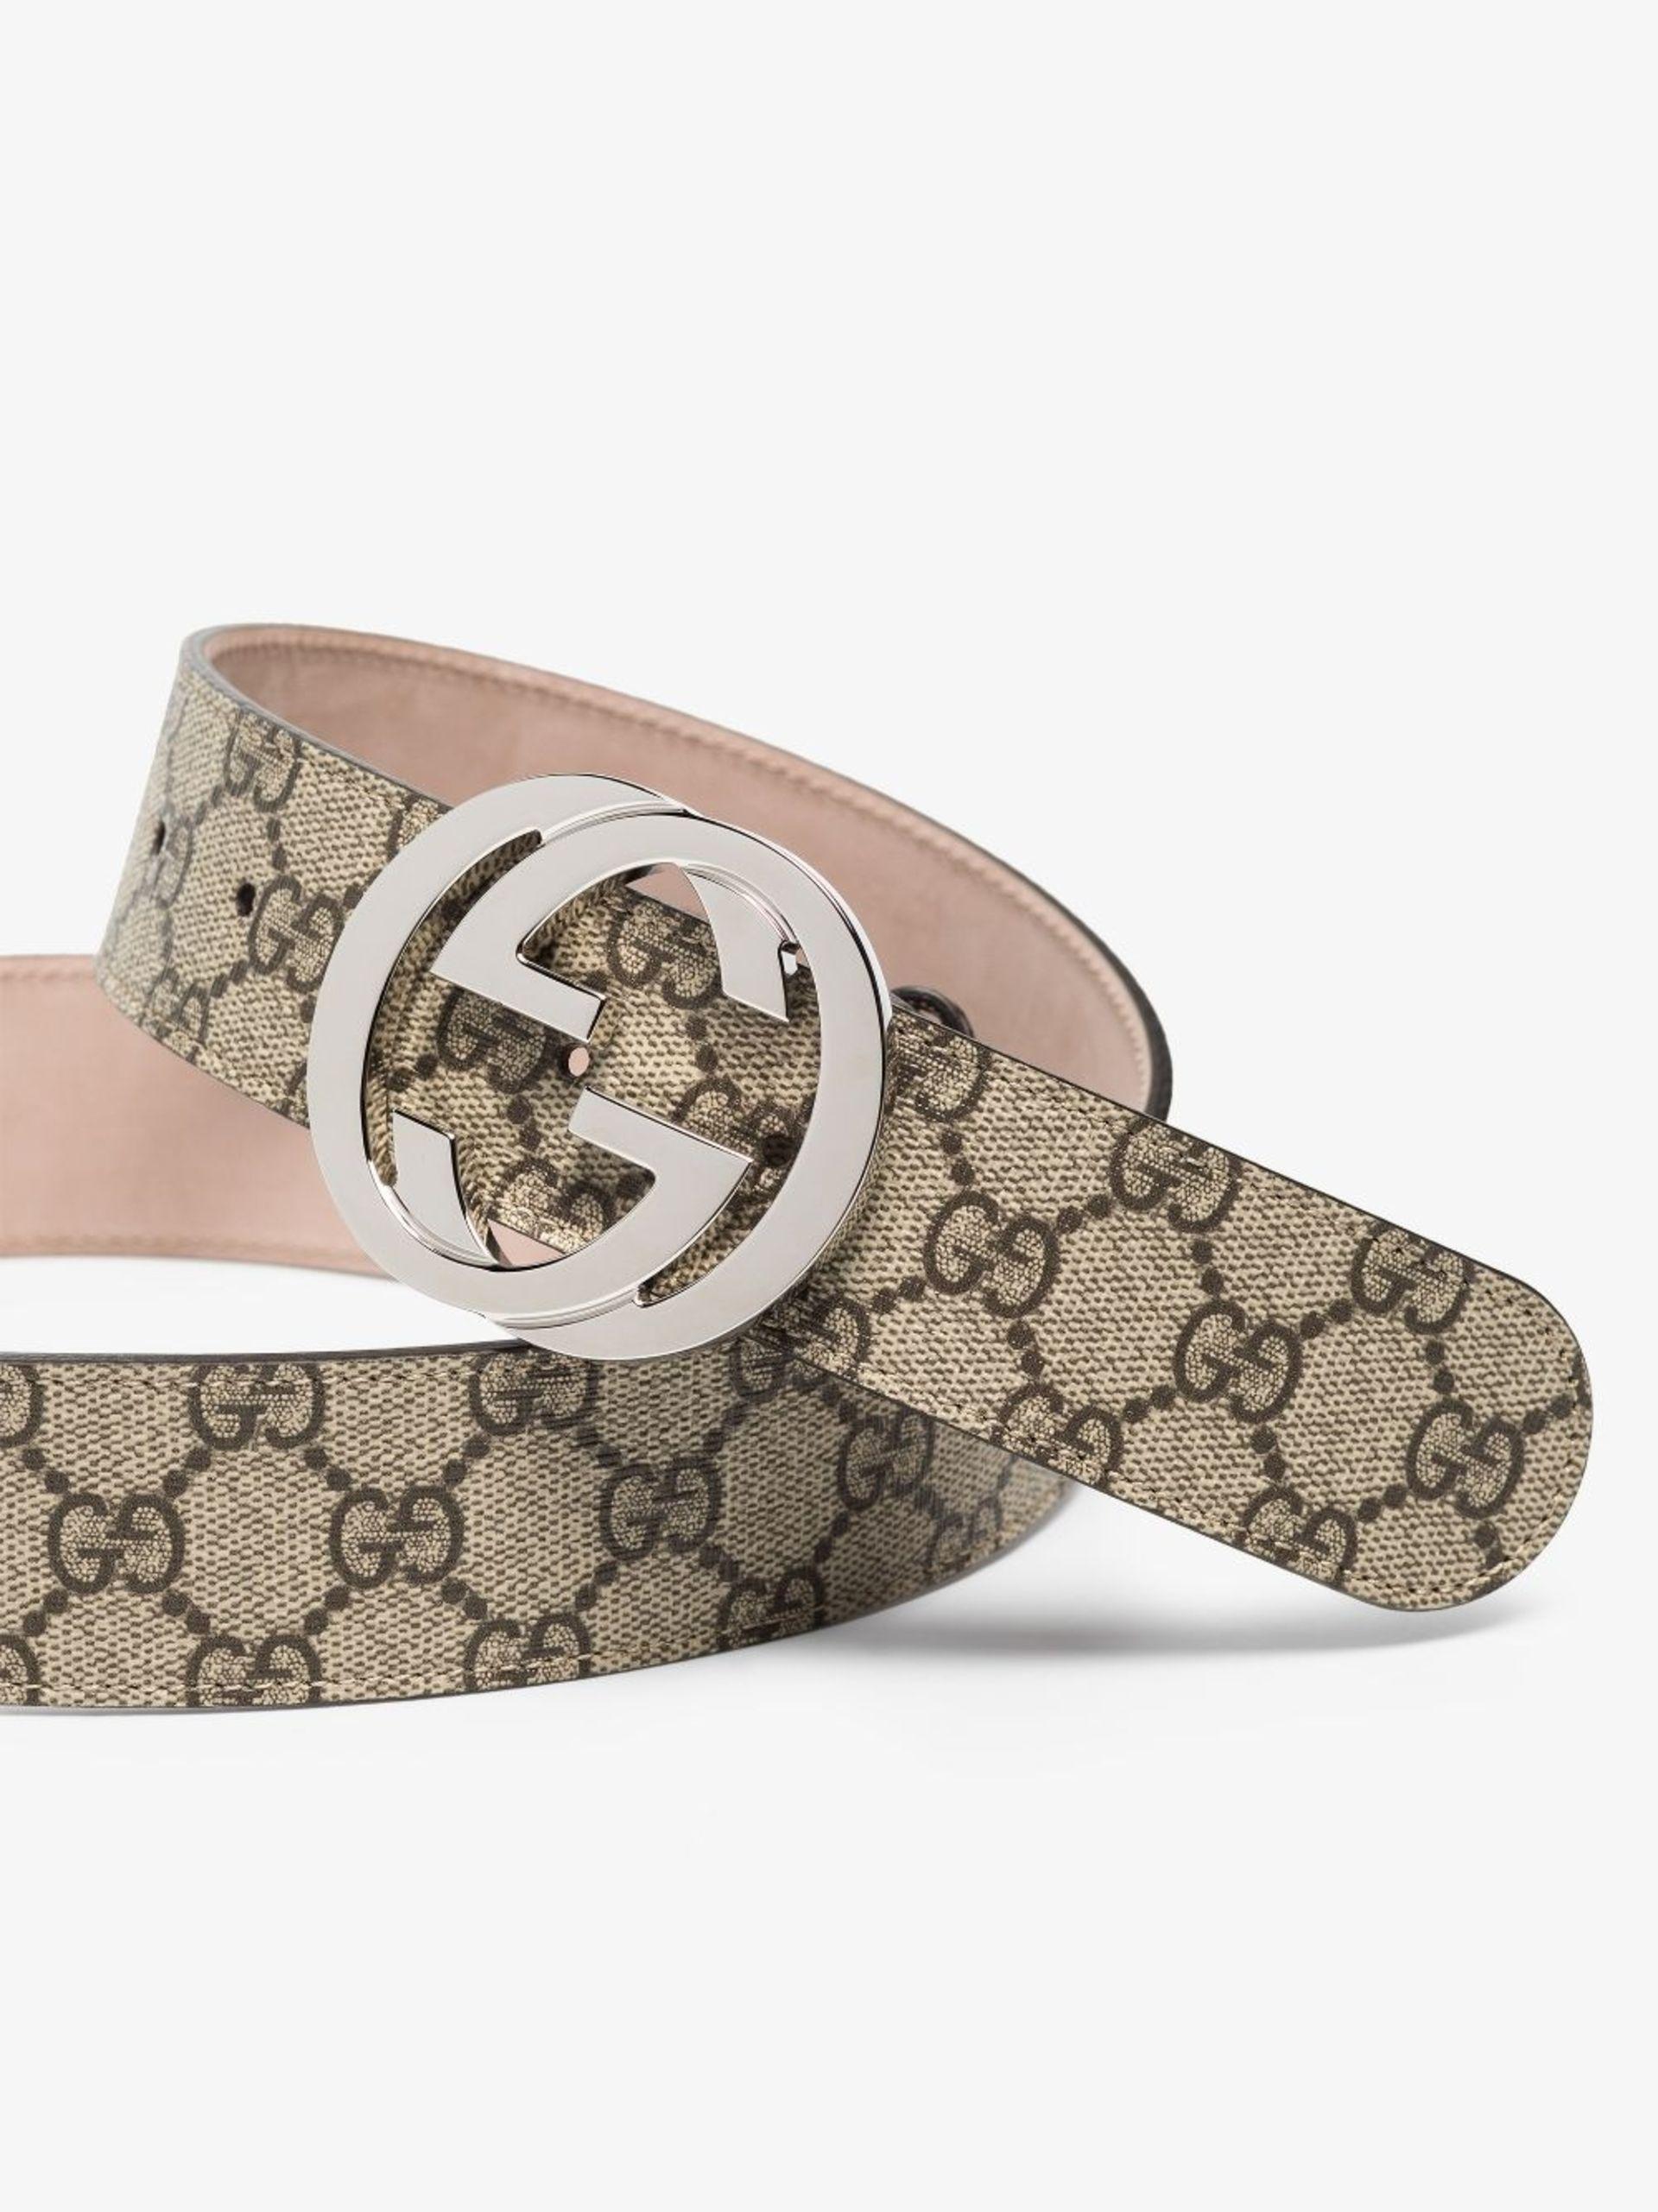 Gucci Gg-supreme Adjustable Belt